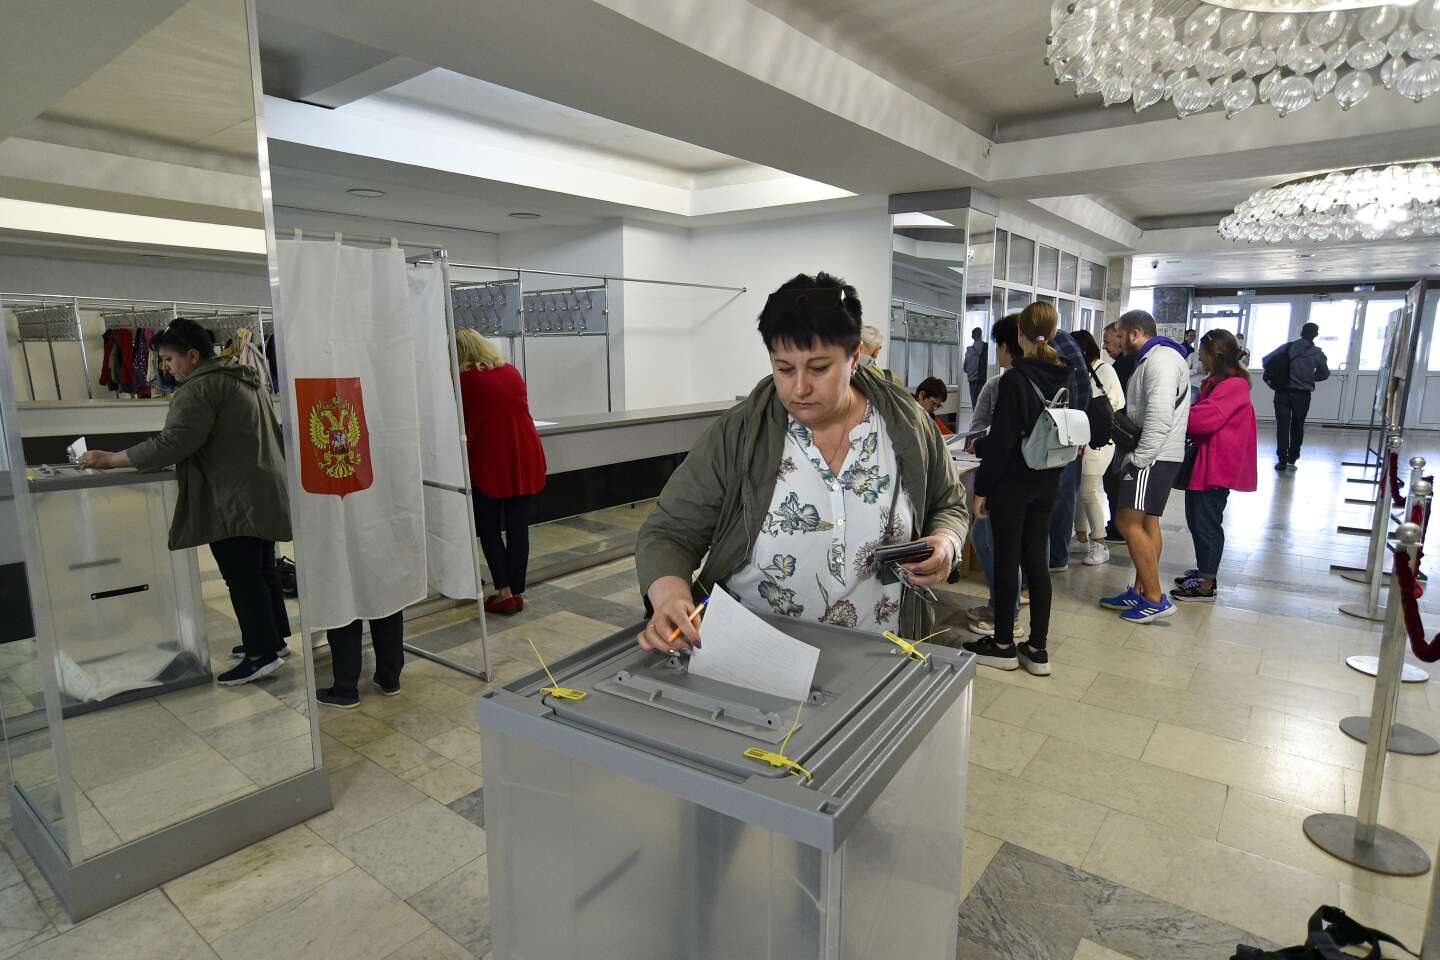 Despite a flood of Western criticism, Russia holds annexation referendum in Ukraine